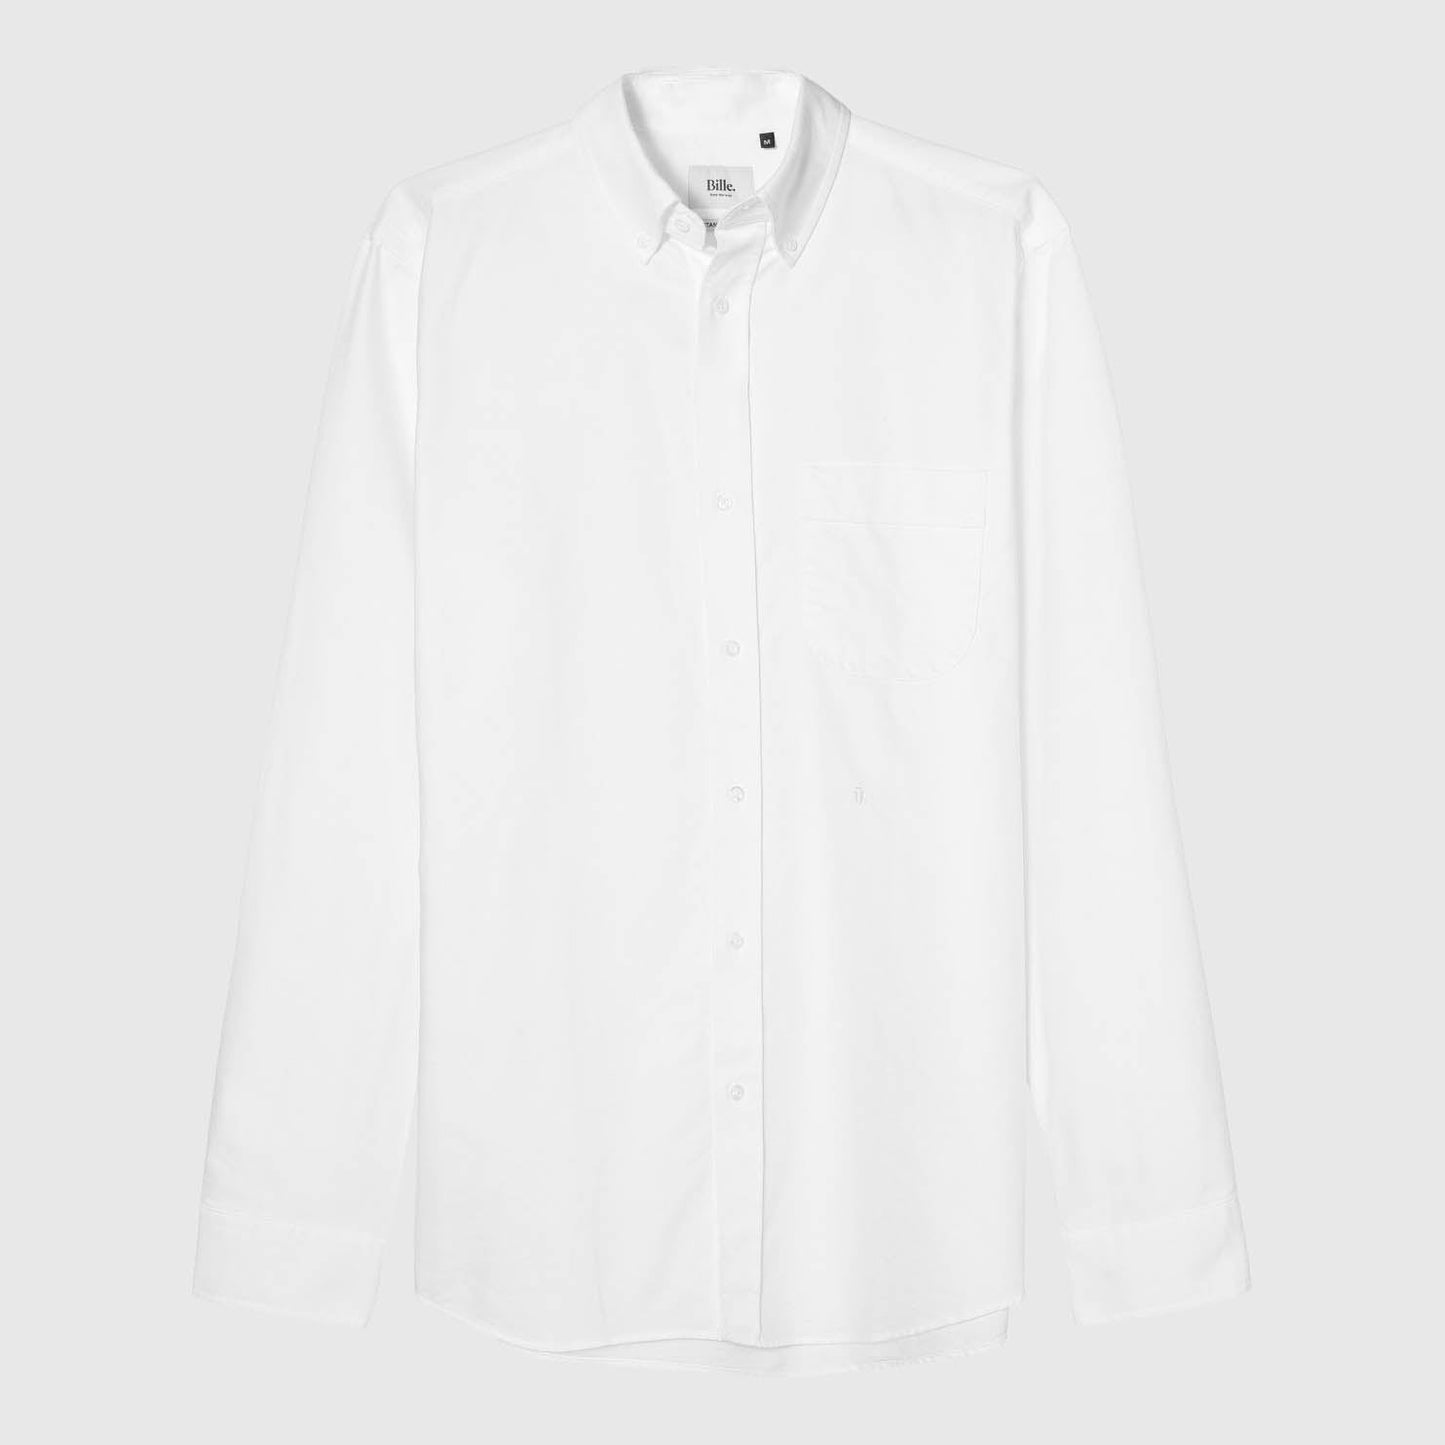 Bille Oxford Shirt - White Bille 